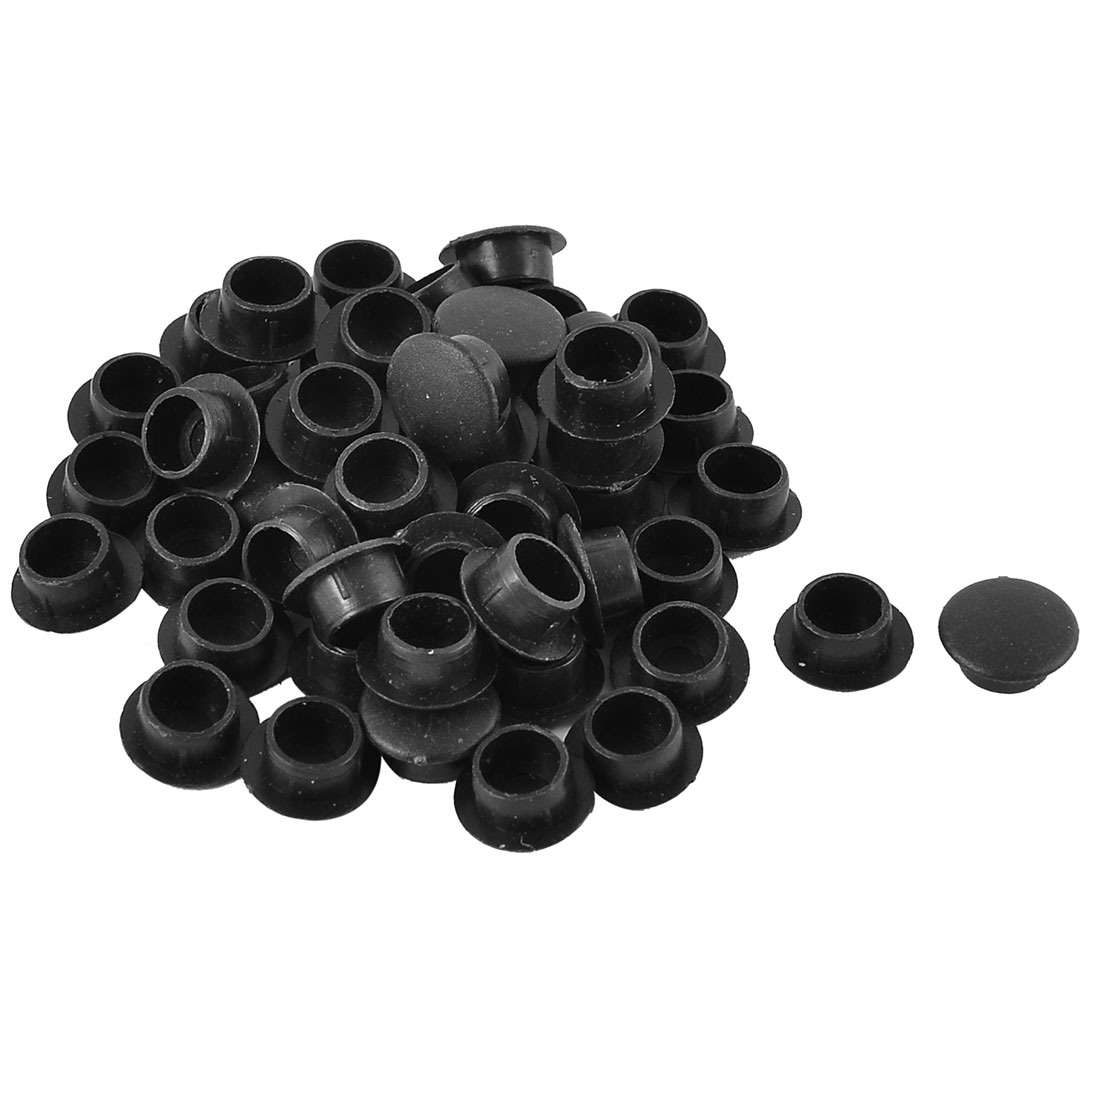 Shop Home Cabinet Decor Plastic Hole Plugs Caps Black 50pcs